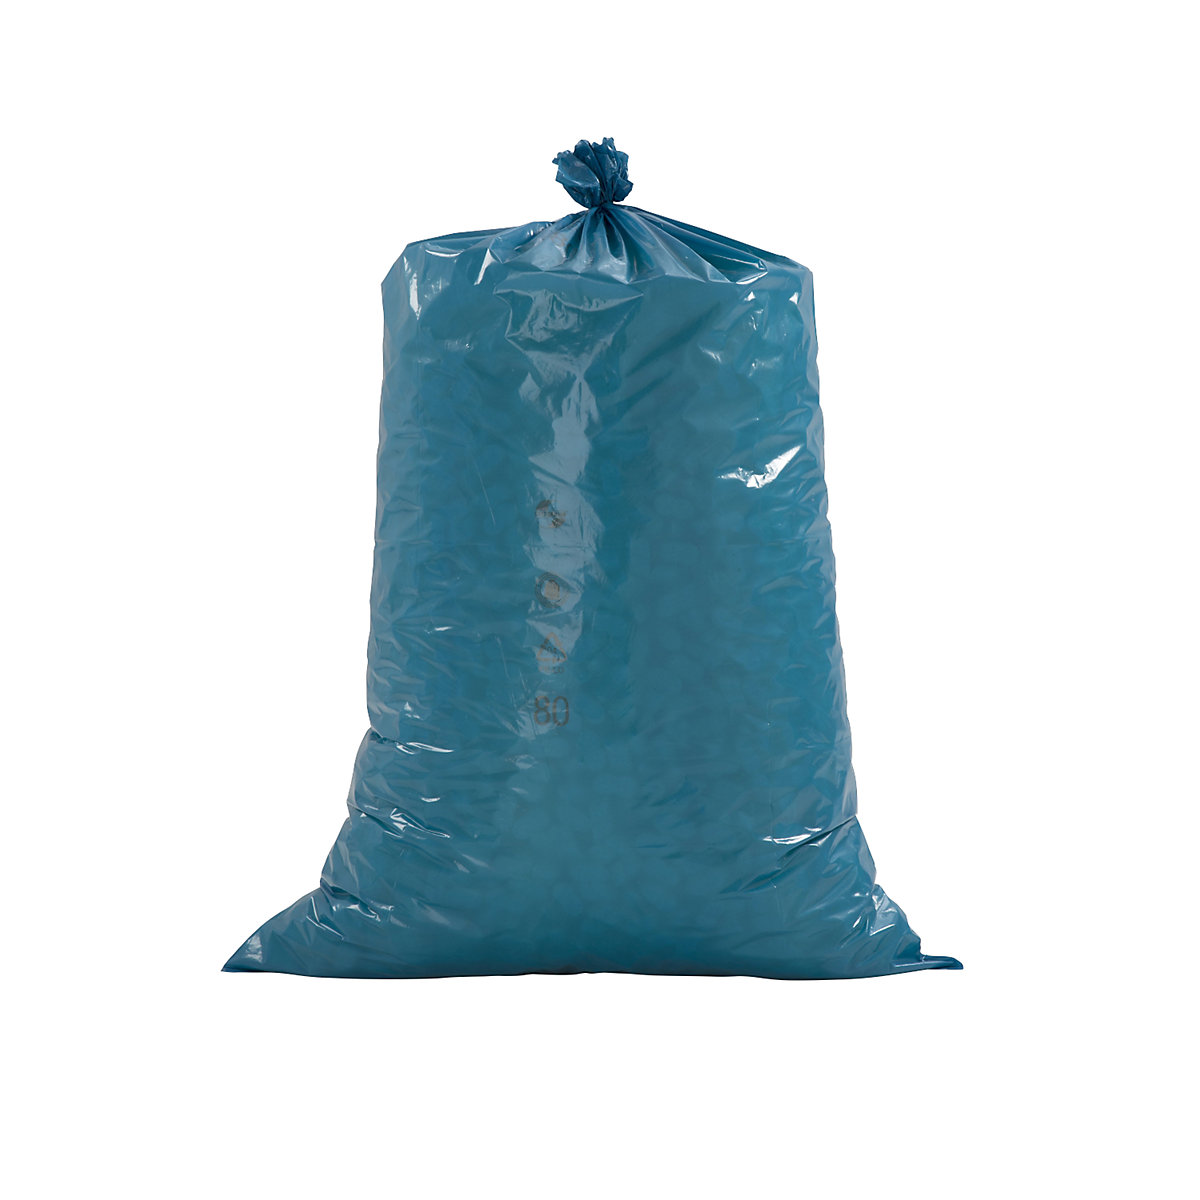 Nagy térfogatú hulladékgyűjtő zsákok, PREMIUM, LDPE